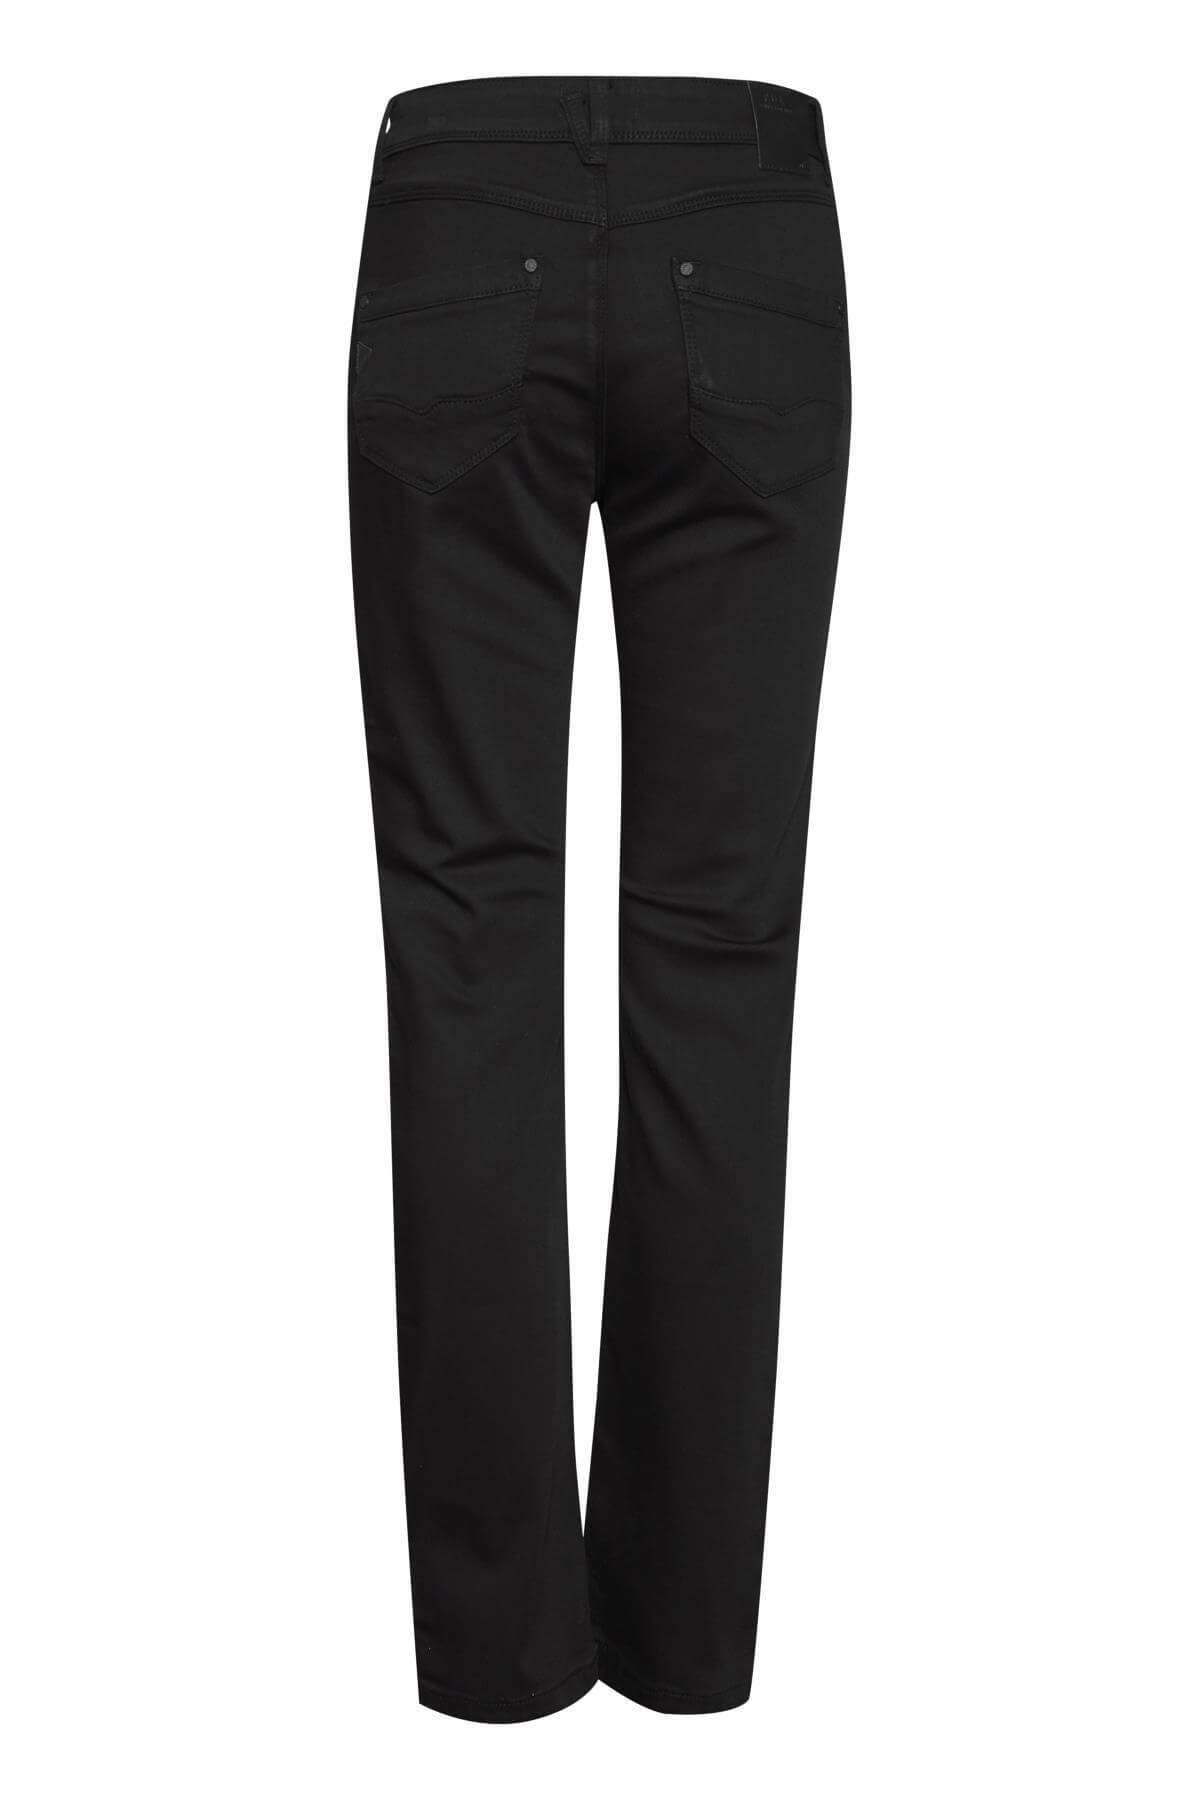 Straight Leg / Jeans, black. Varenr. 50205667